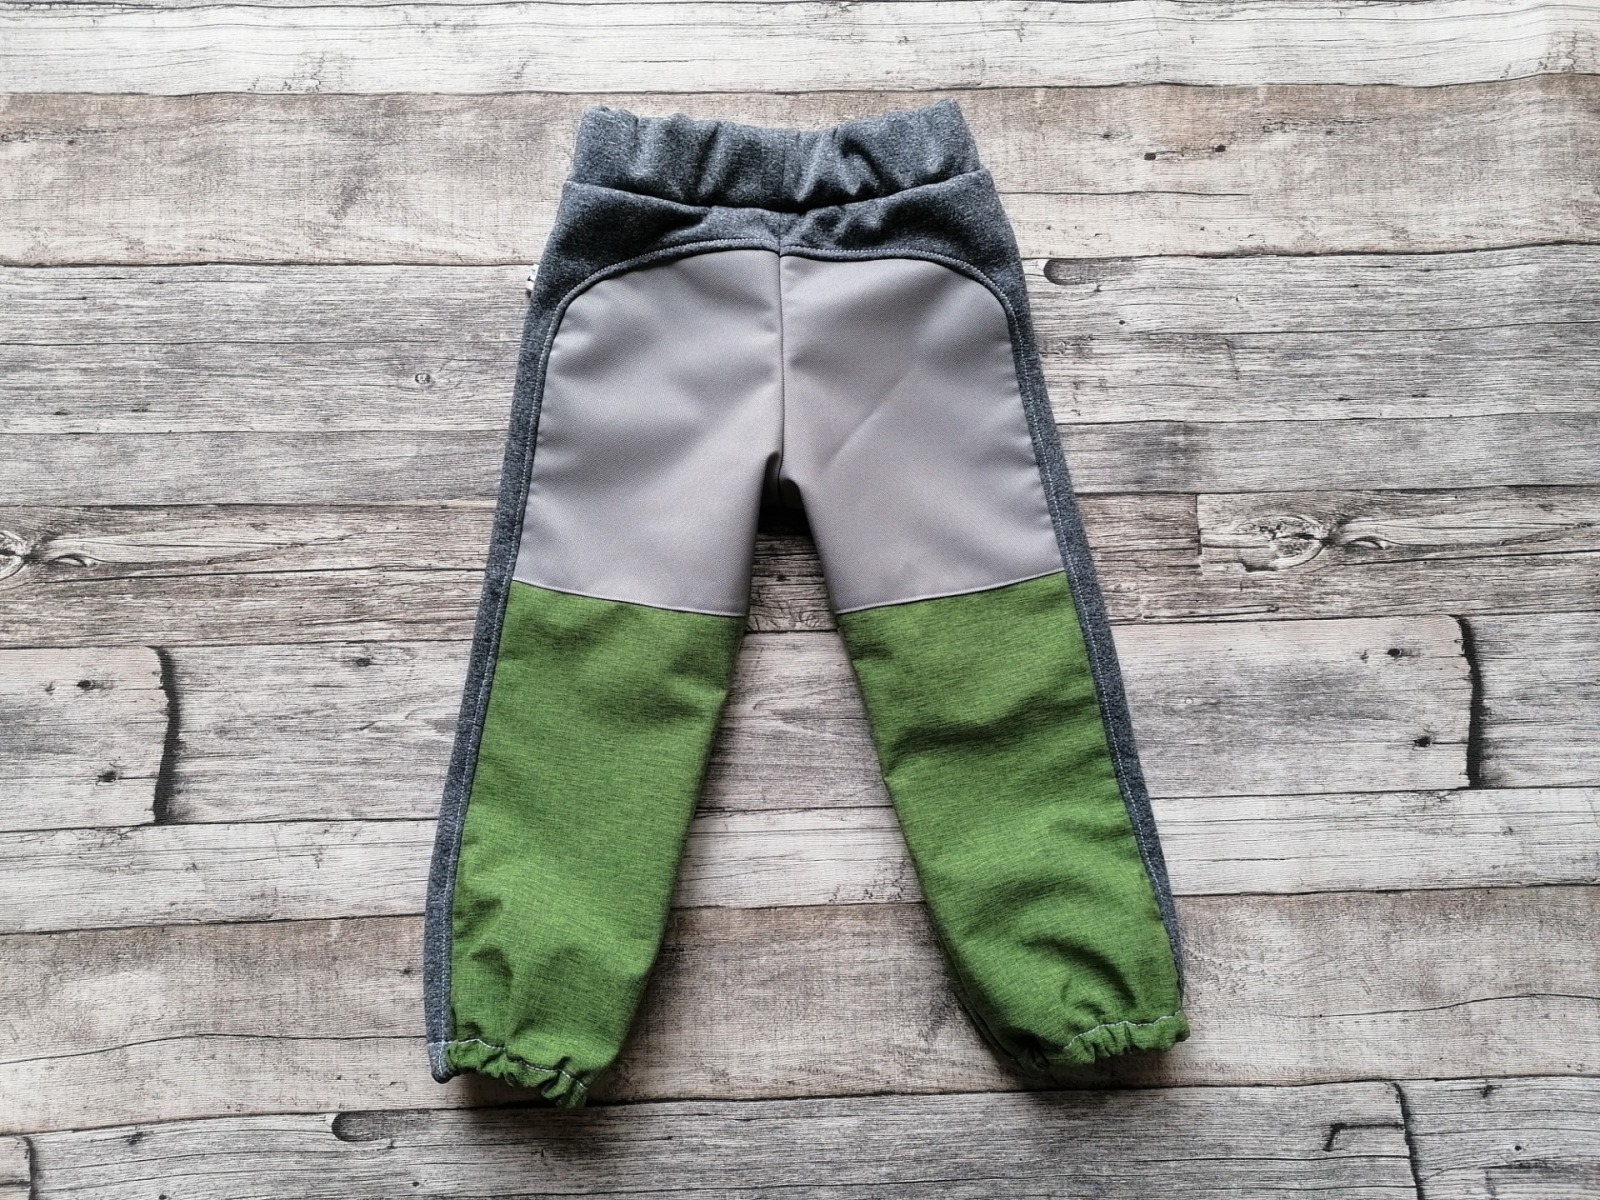 Softshellhose für Babys und Kinder mit Cordura-Belegen an Knie und Po Grün-meliert Grau ideal für